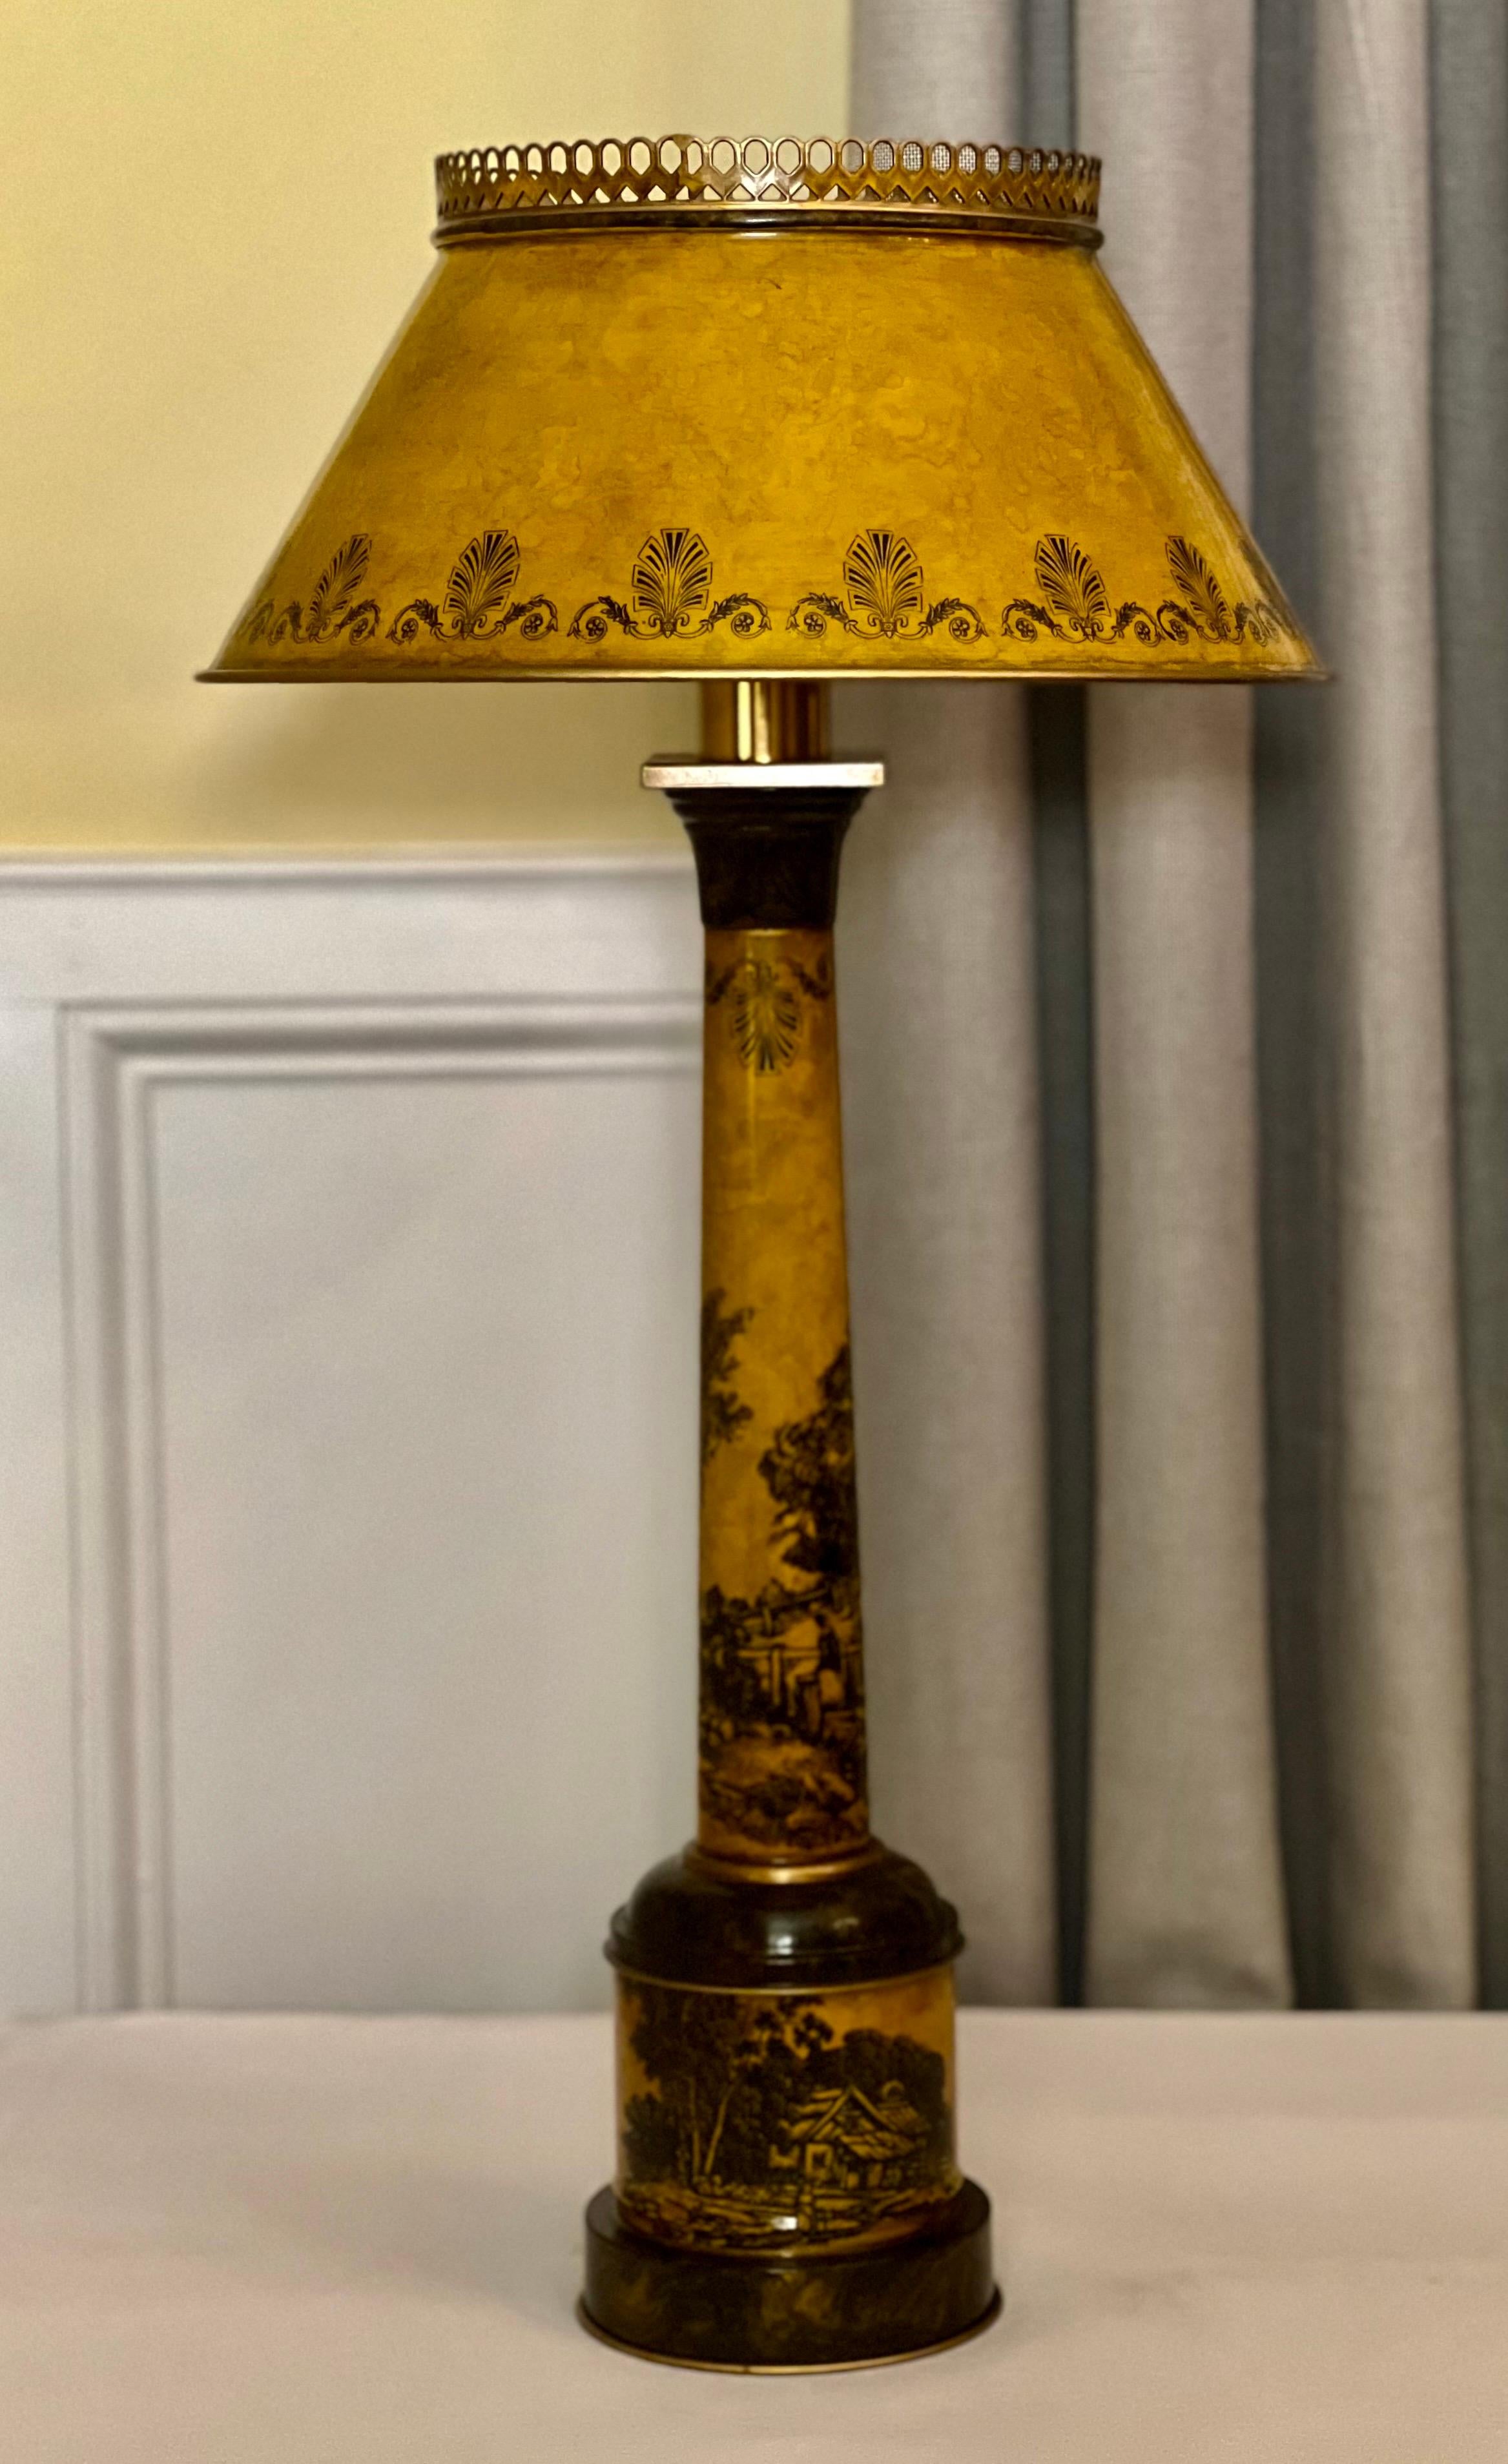 Italienische Tole-Lampe aus der Mitte des 20. Jahrhunderts mit Original-Schirm.

Feine italienische Tischleuchte in Form einer Säule in einem warmen Ockerton. Es ist aufwendig mit einer ruhigen pastoralen Szene mit Tieren, Figuren, einem Bauernhaus,